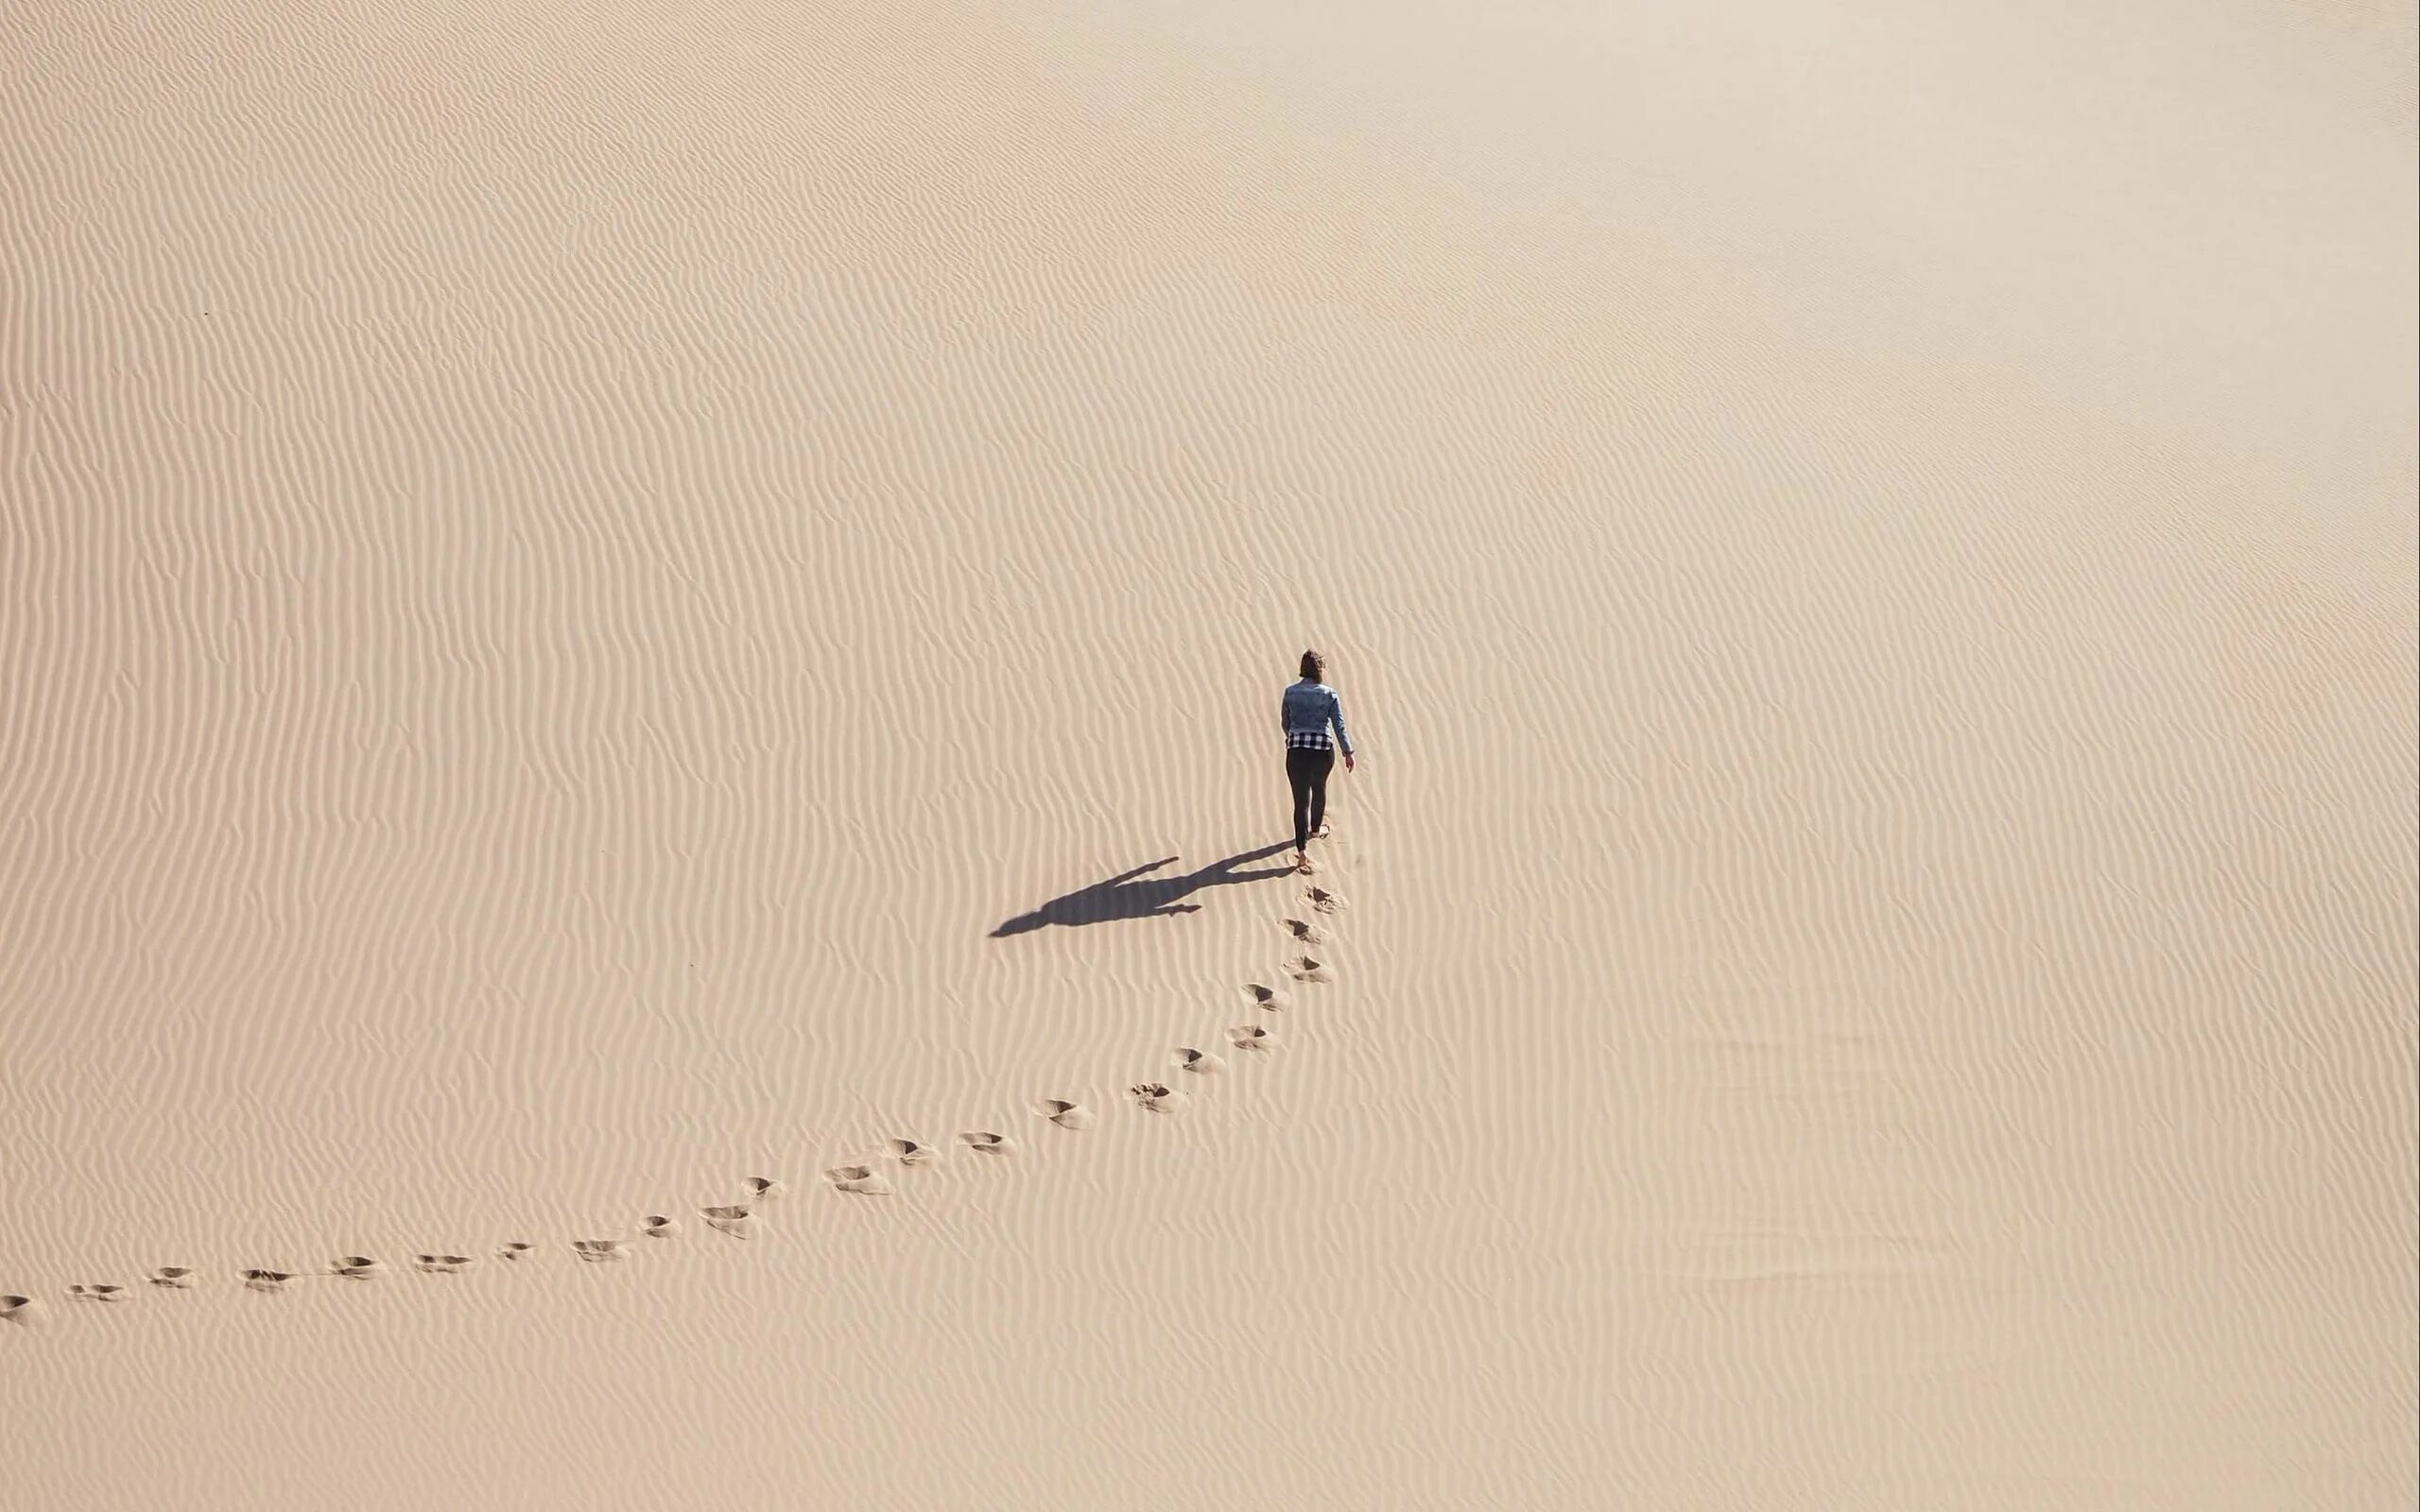 Следы на песке в пустыне. Следы в пустыне. Идущие по пустыне. Человек идет по пустыне. Their distance